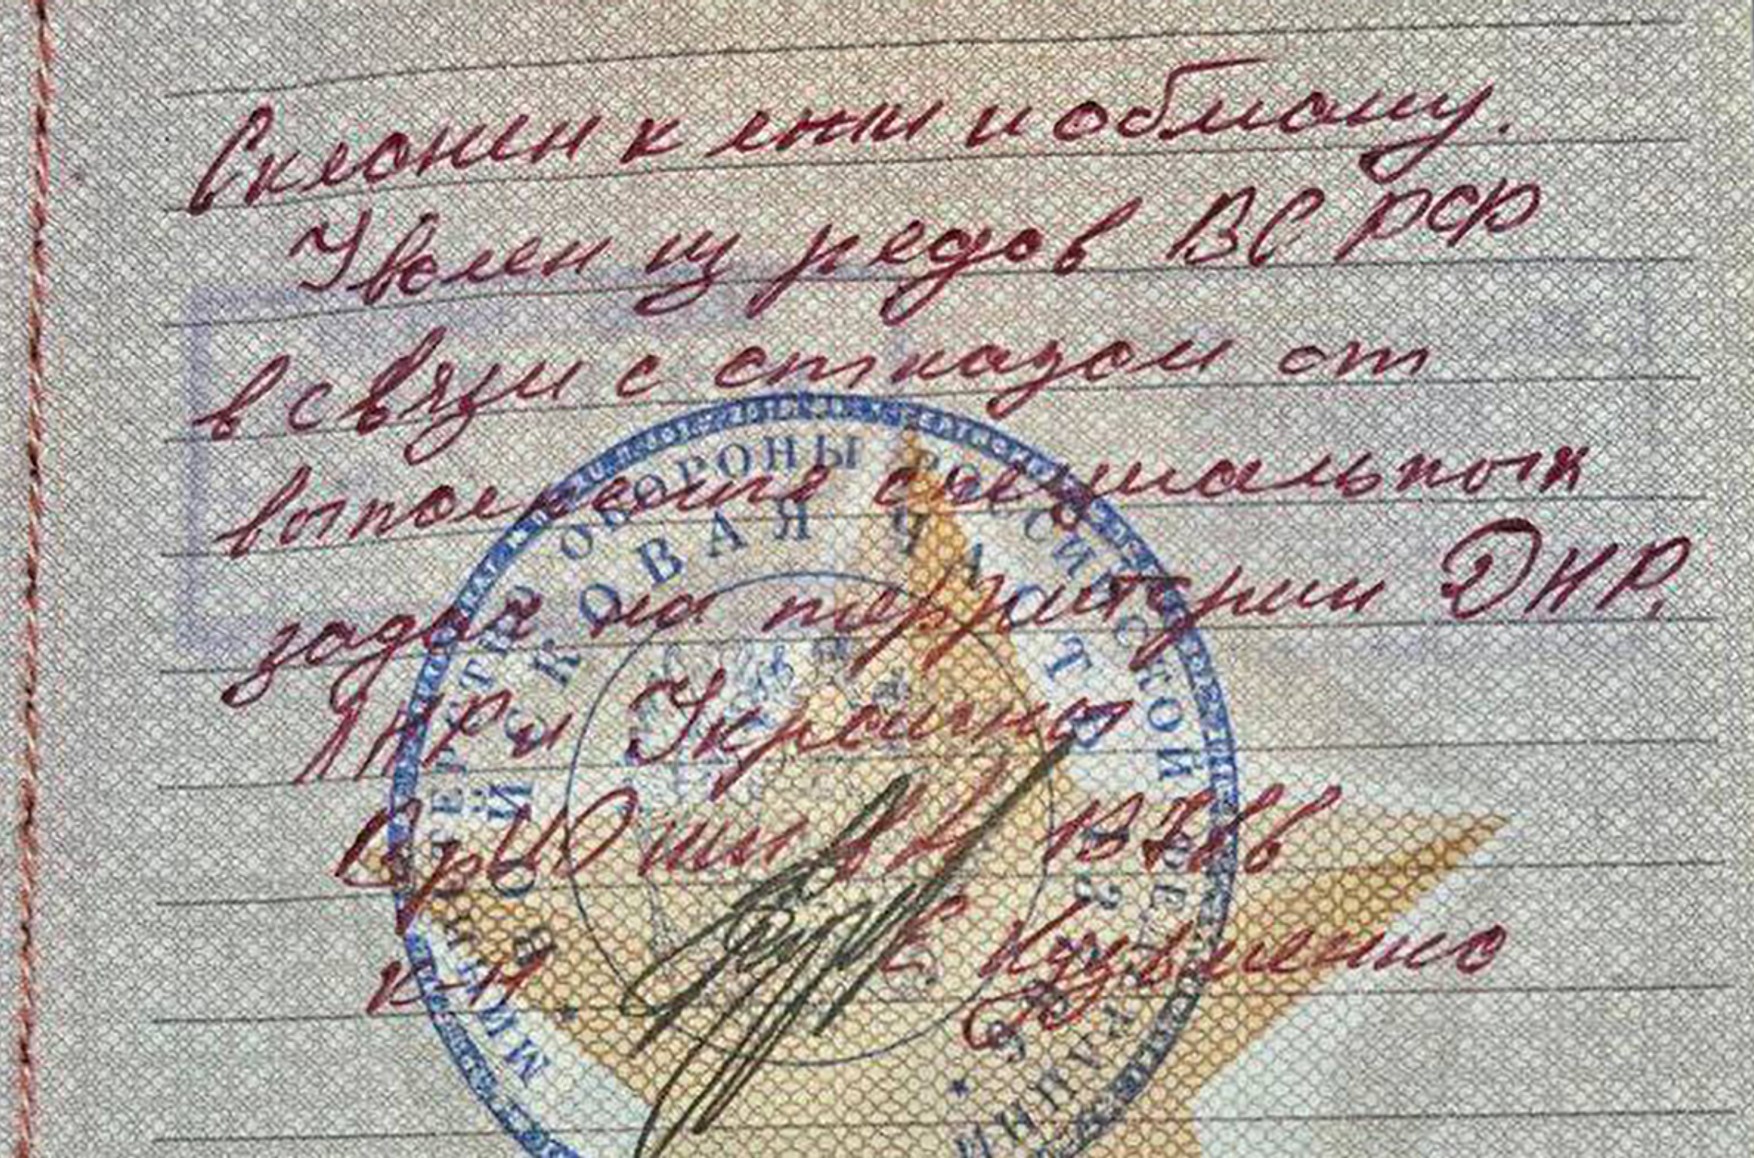 В Волгограде военный суд признал незаконной запись «склонен ко лжи и обману» в военном билете